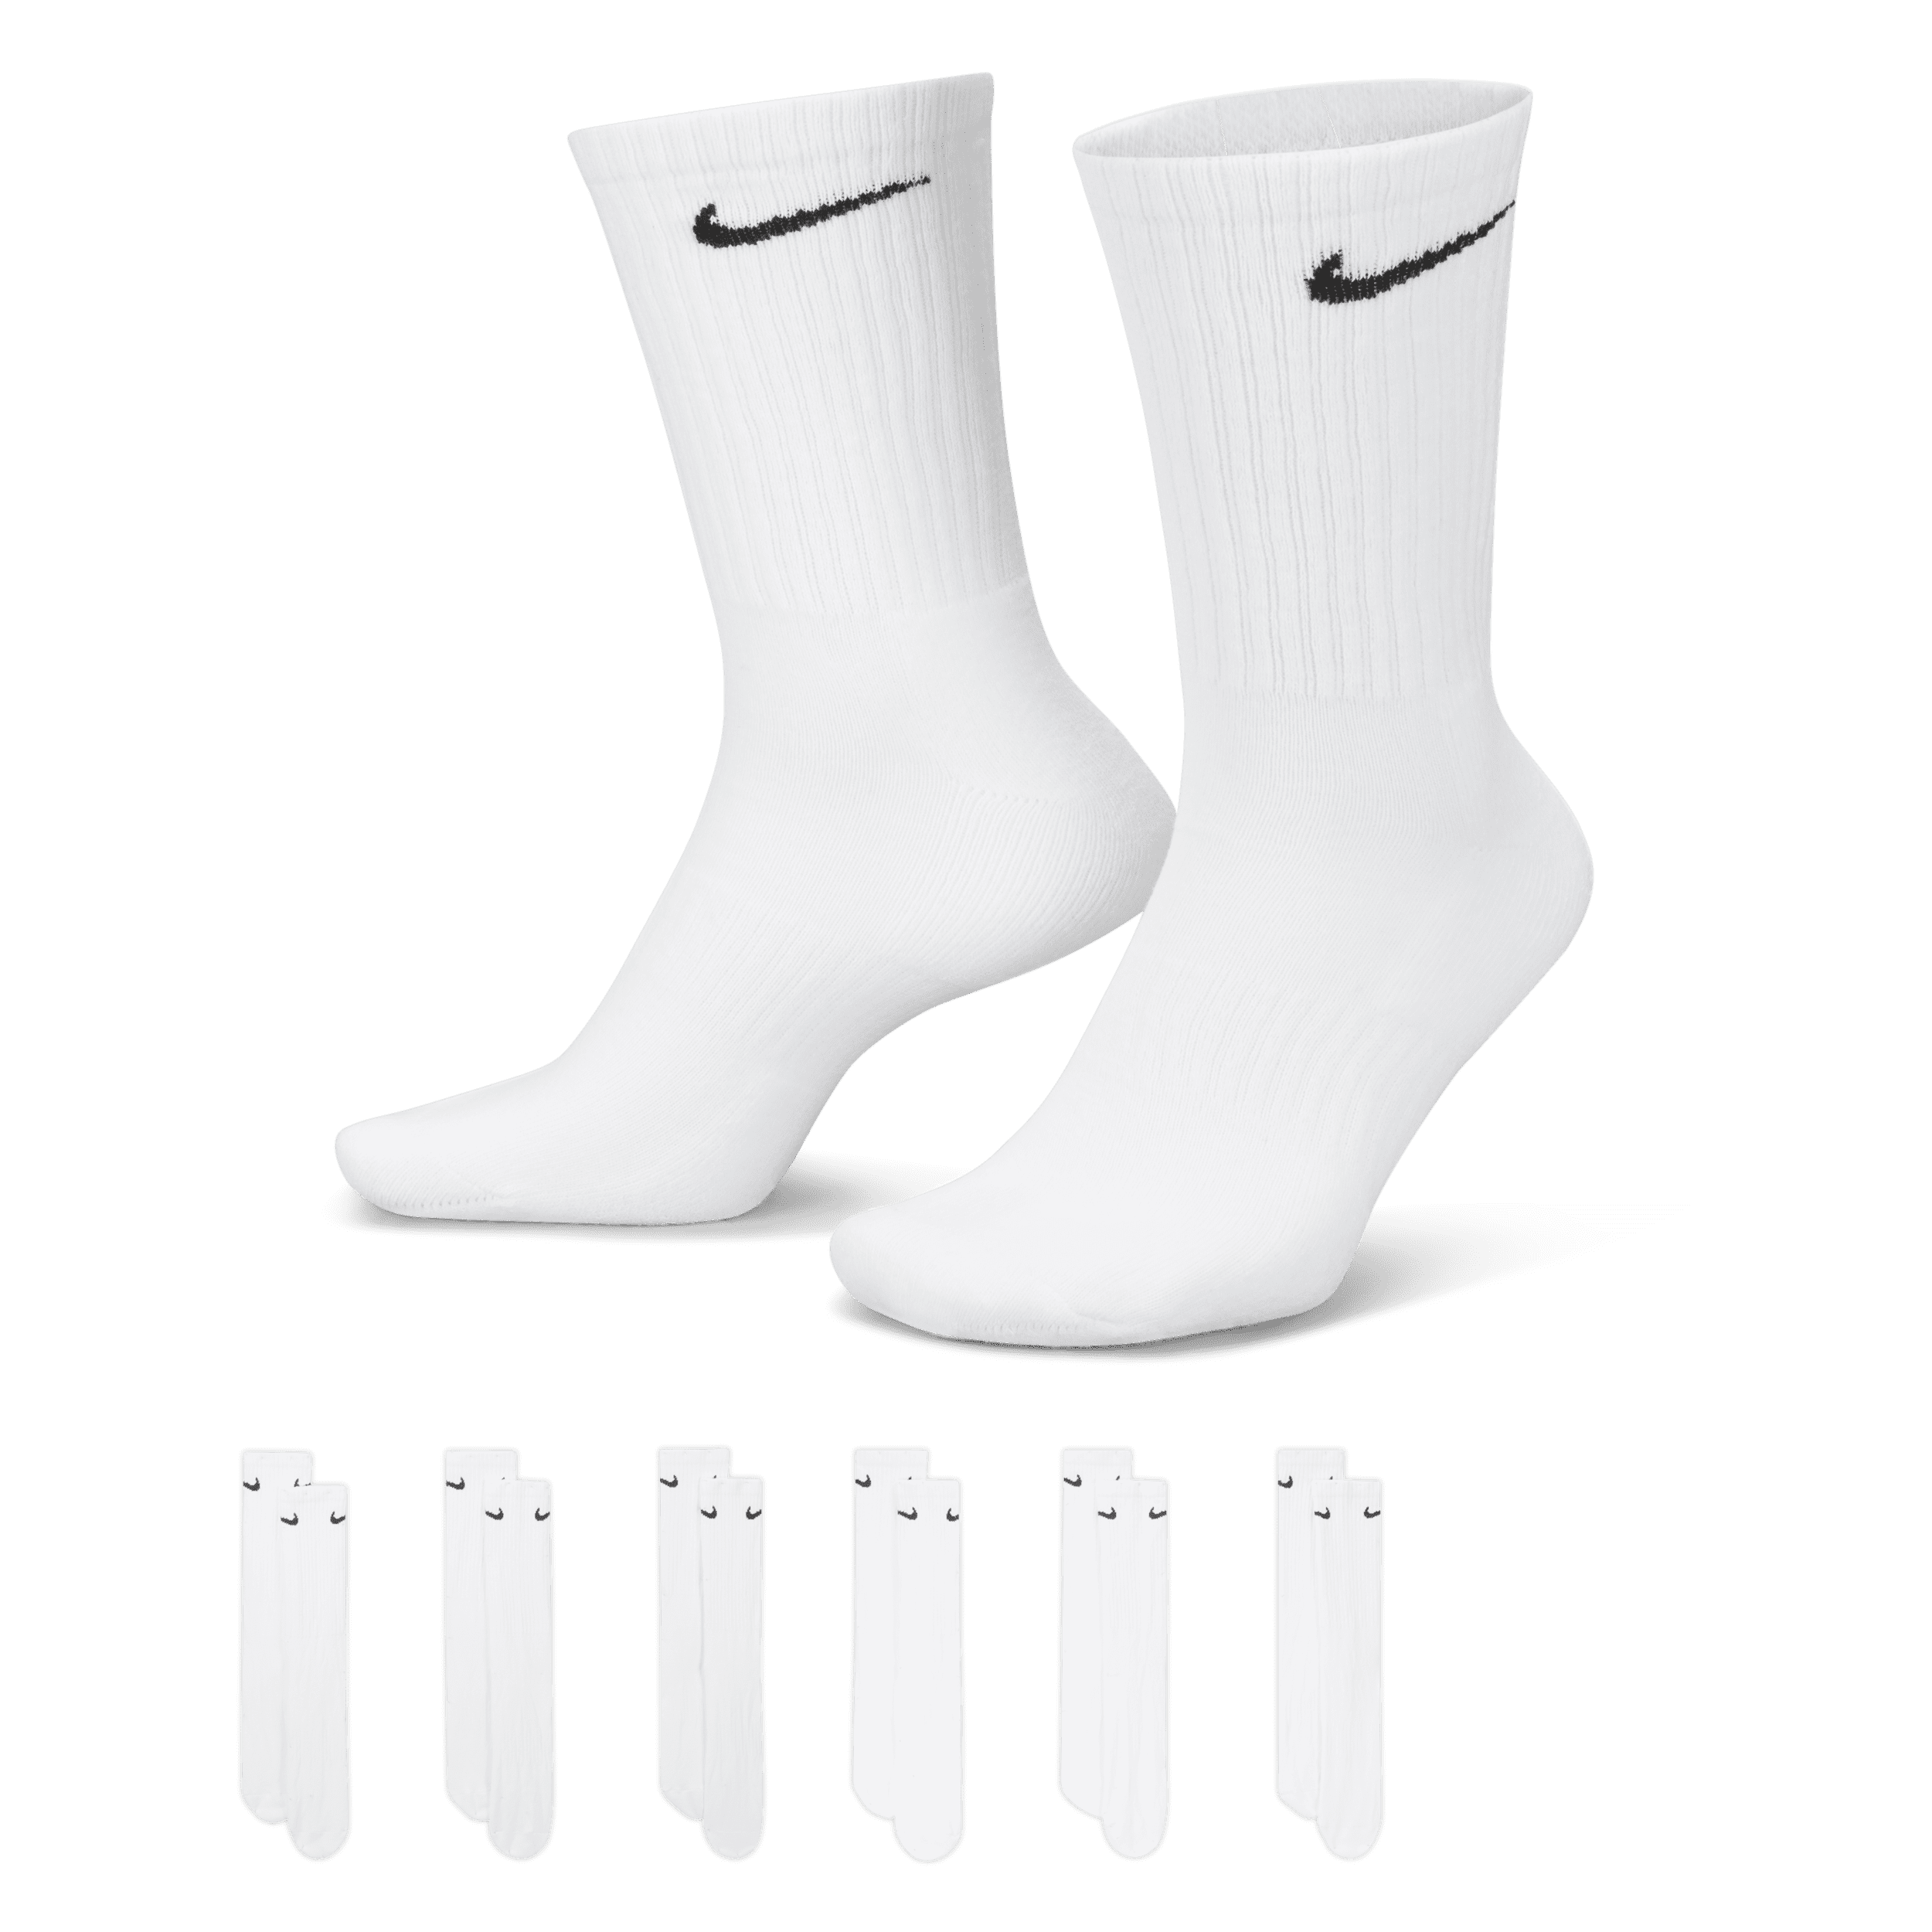 Calze da training Nike Everyday Cushioned di media lunghezza (6 paia) - Bianco